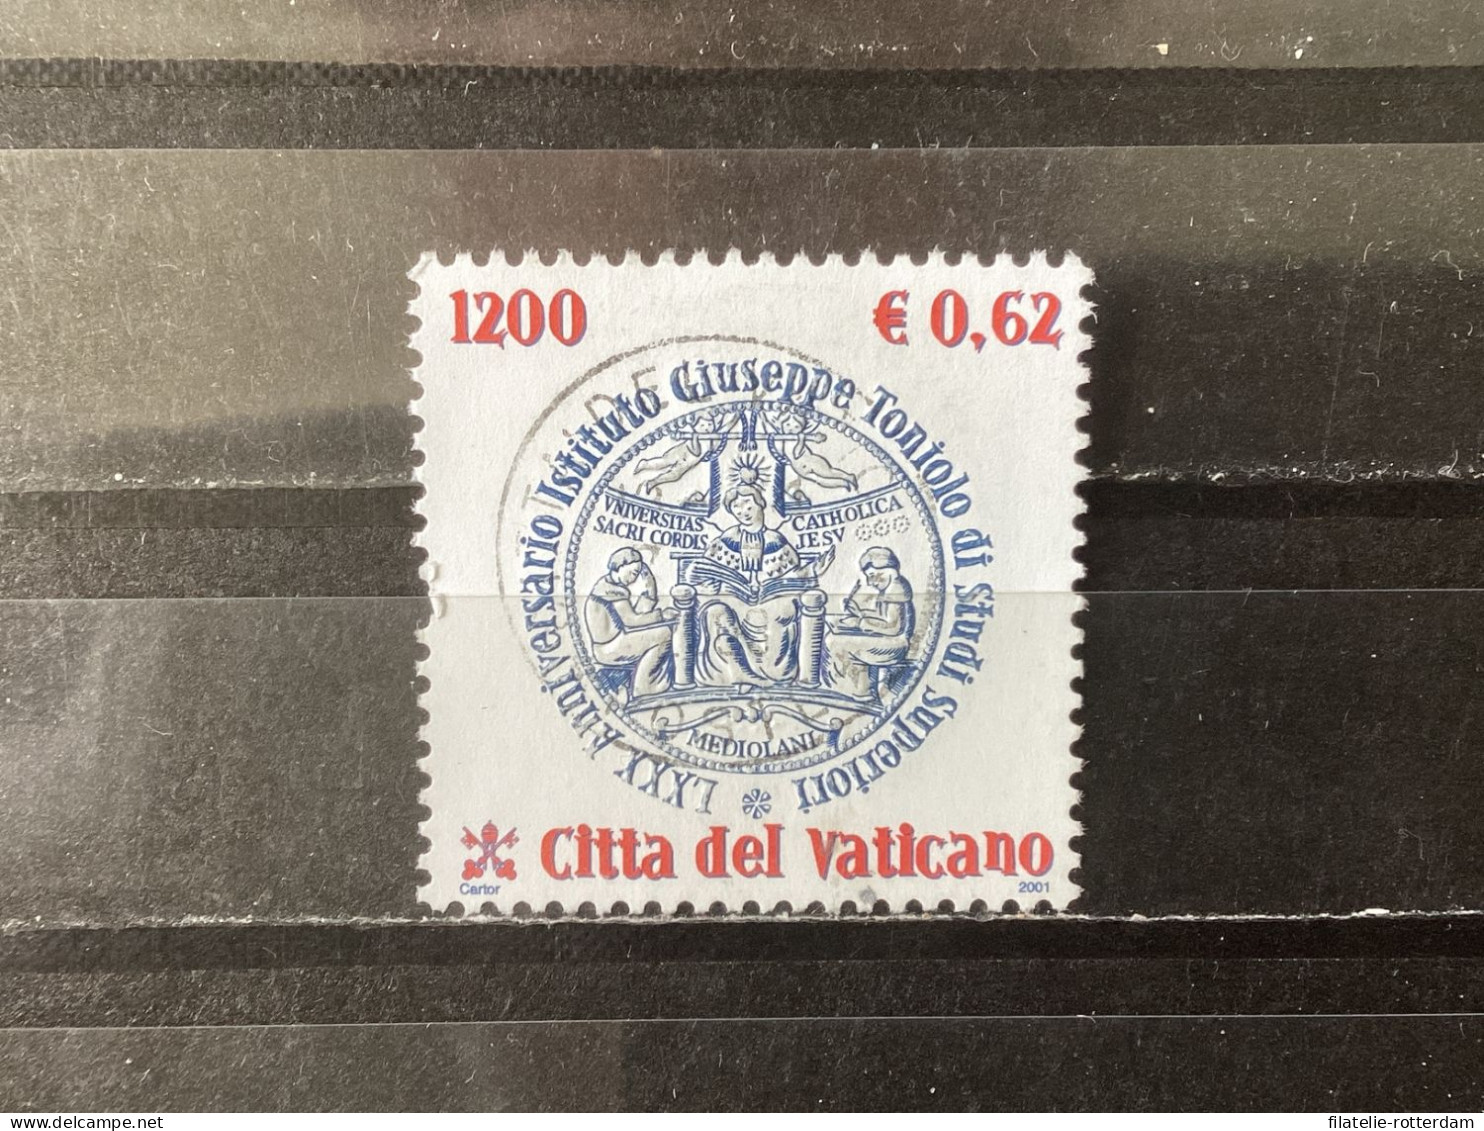 Vatican City / Vaticaanstad - Guiseppe Toniolo Institute (0.62) 2001 - Oblitérés